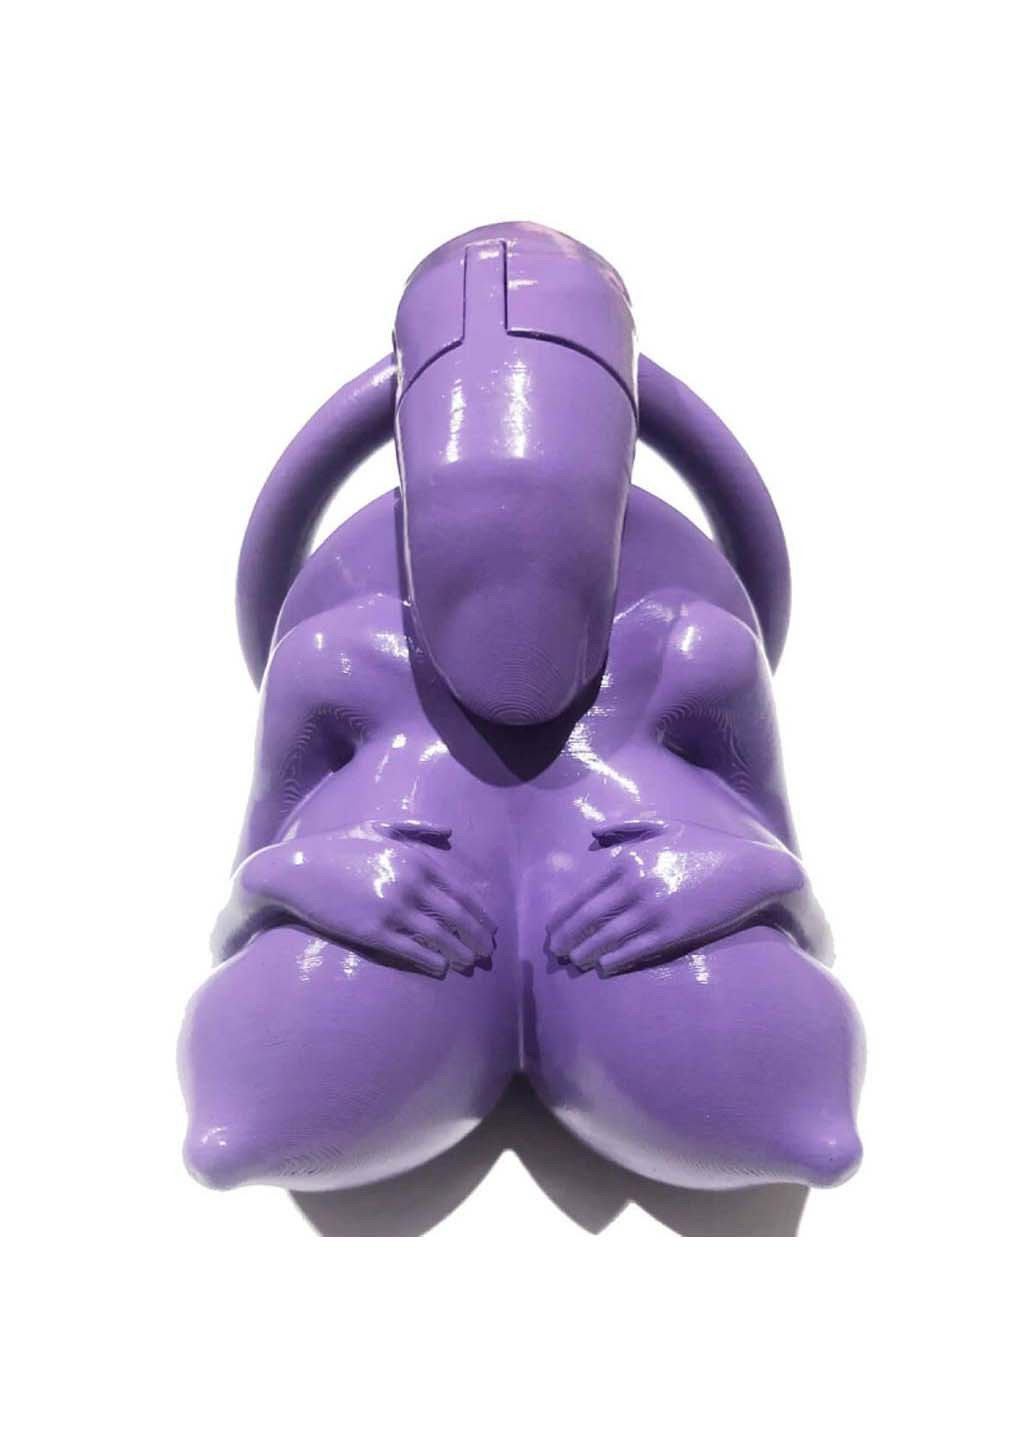 Пояс вірності для чоловіків Big Boobs New Chastity Device Purple Bdsm4u (277229375)